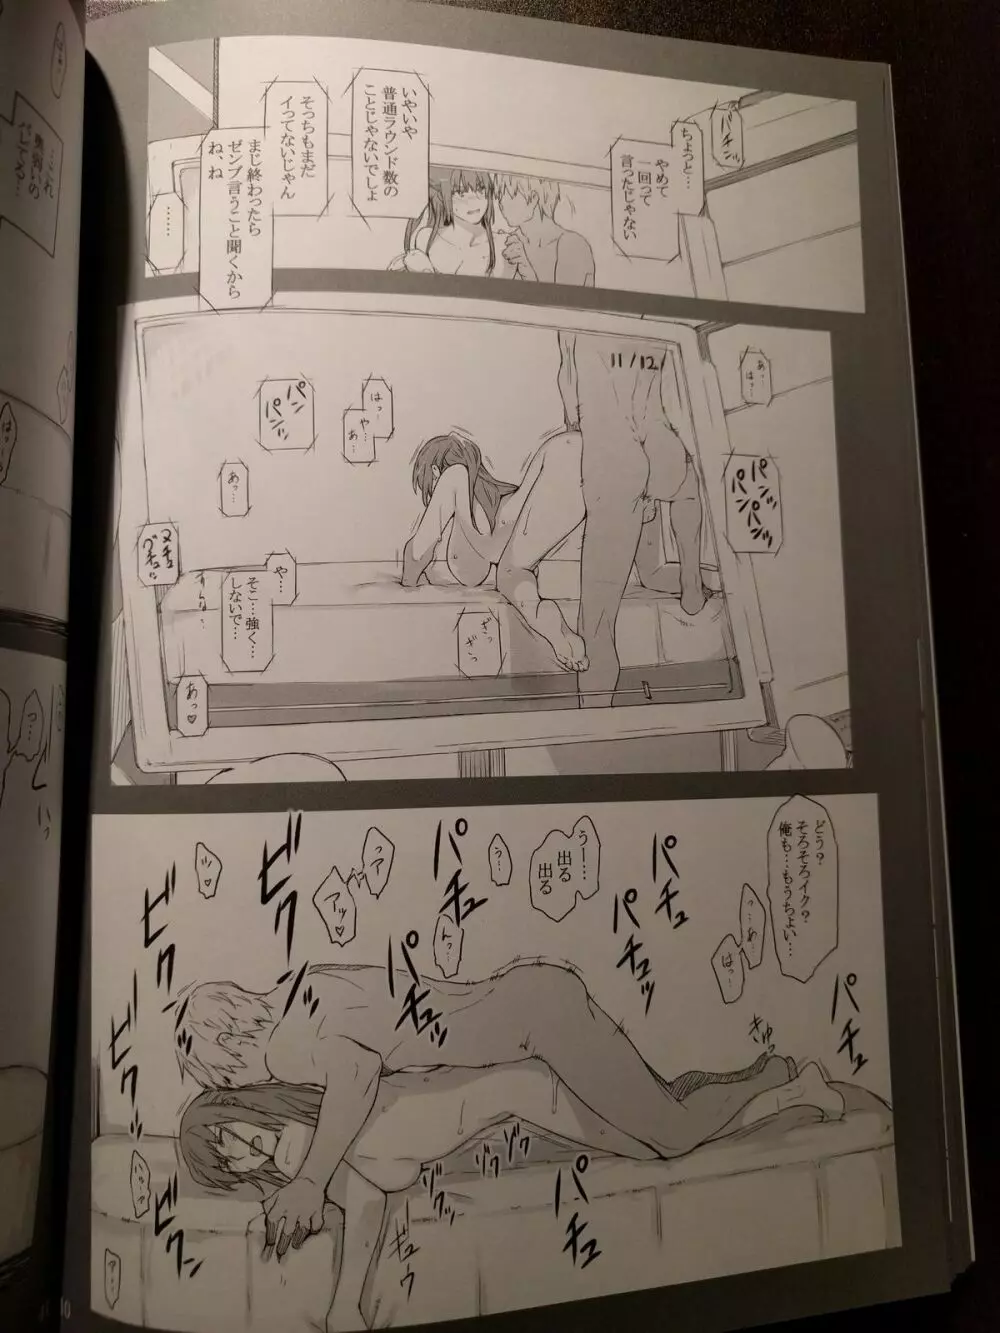 橘さん家ノ男性事情 小説版挿絵+オマケの本 page 27 onward 14ページ